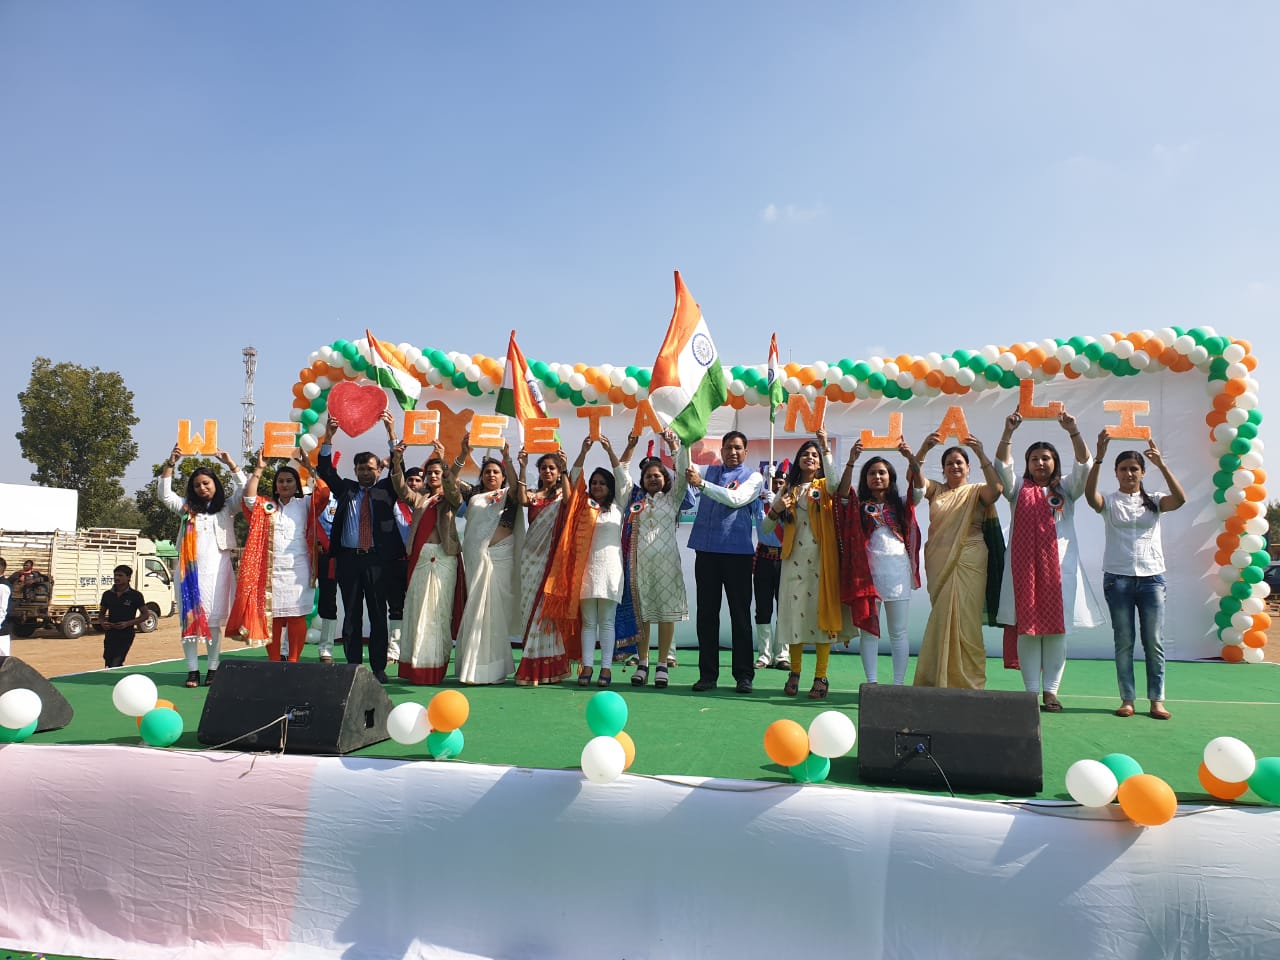 १० वर्षों की सेवा से सम्मानित हुए ११० चिकित्सक एवं कर्मचारी गीतांजली में मनाया भव्य गणतंत्र दिवस